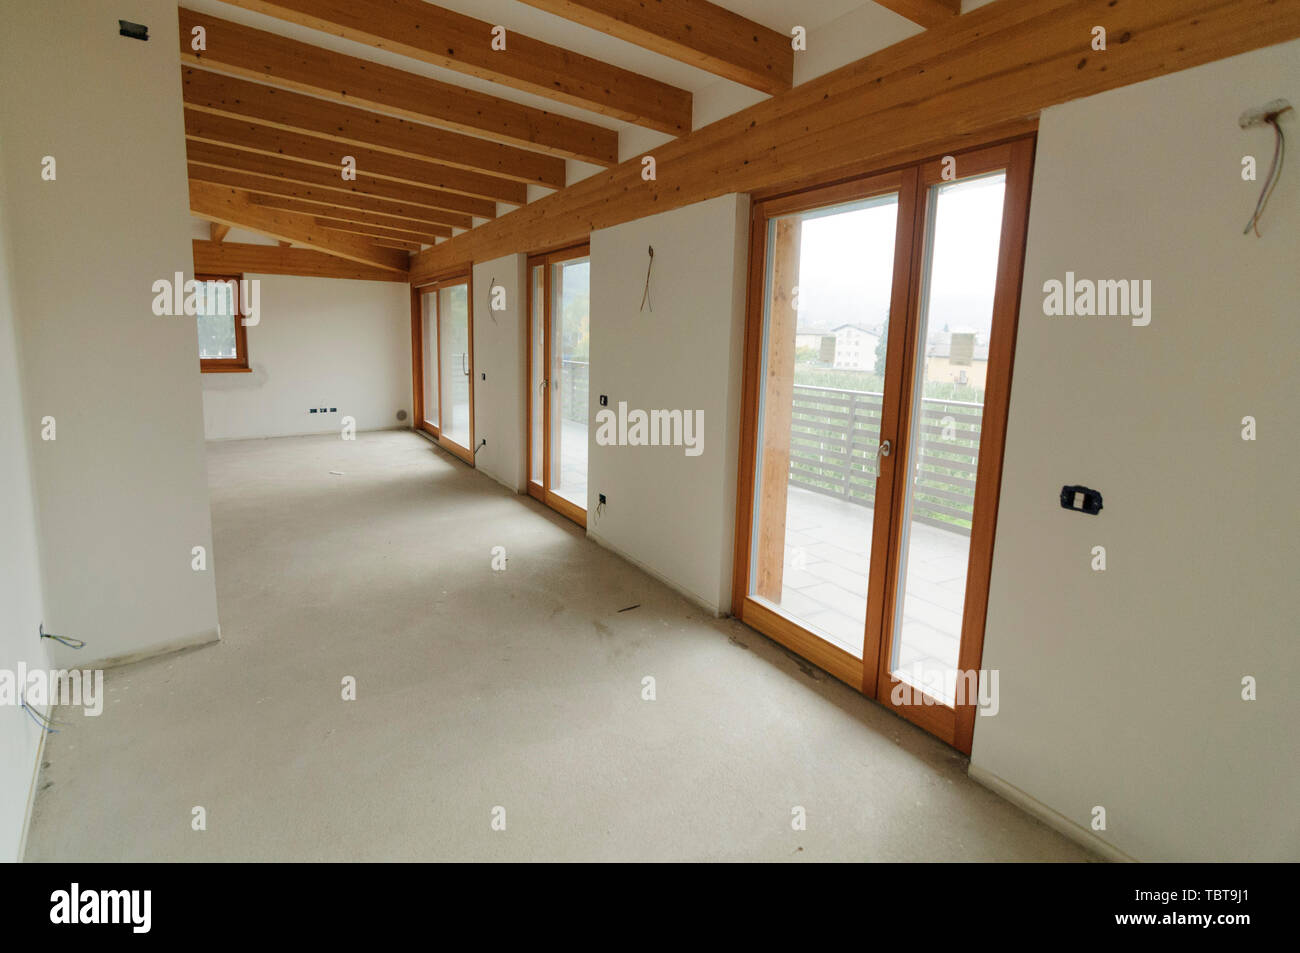 Bau oder Renovierung im Gange: Leere offenen Raum mit großen Fenstern und Holzbalken Stockfoto